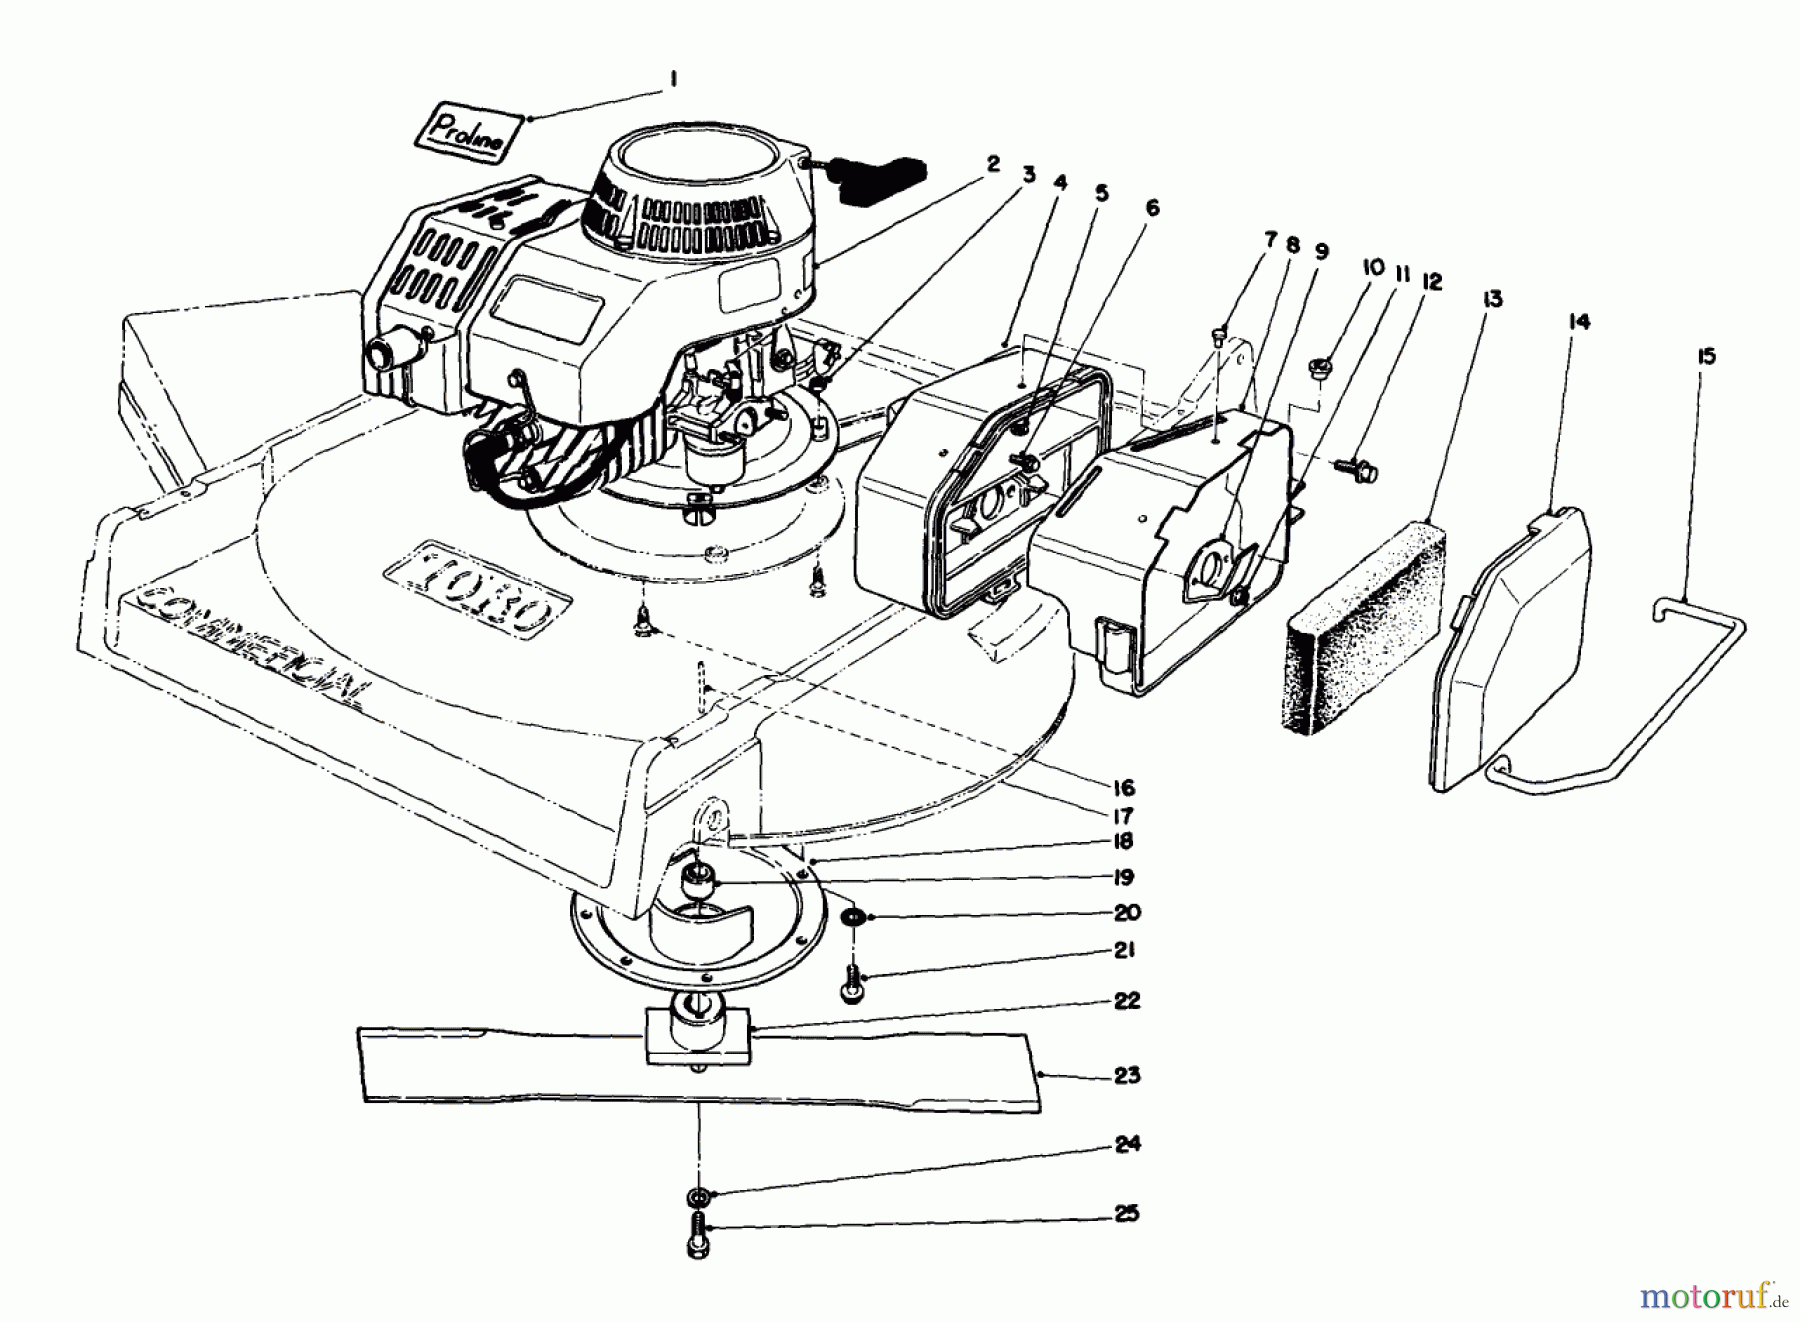  Toro Neu Mowers, Walk-Behind Seite 2 22710C - Toro Lawnmower, 1989 (SN 9900001-9999999) ENGINE ASSEMBLY